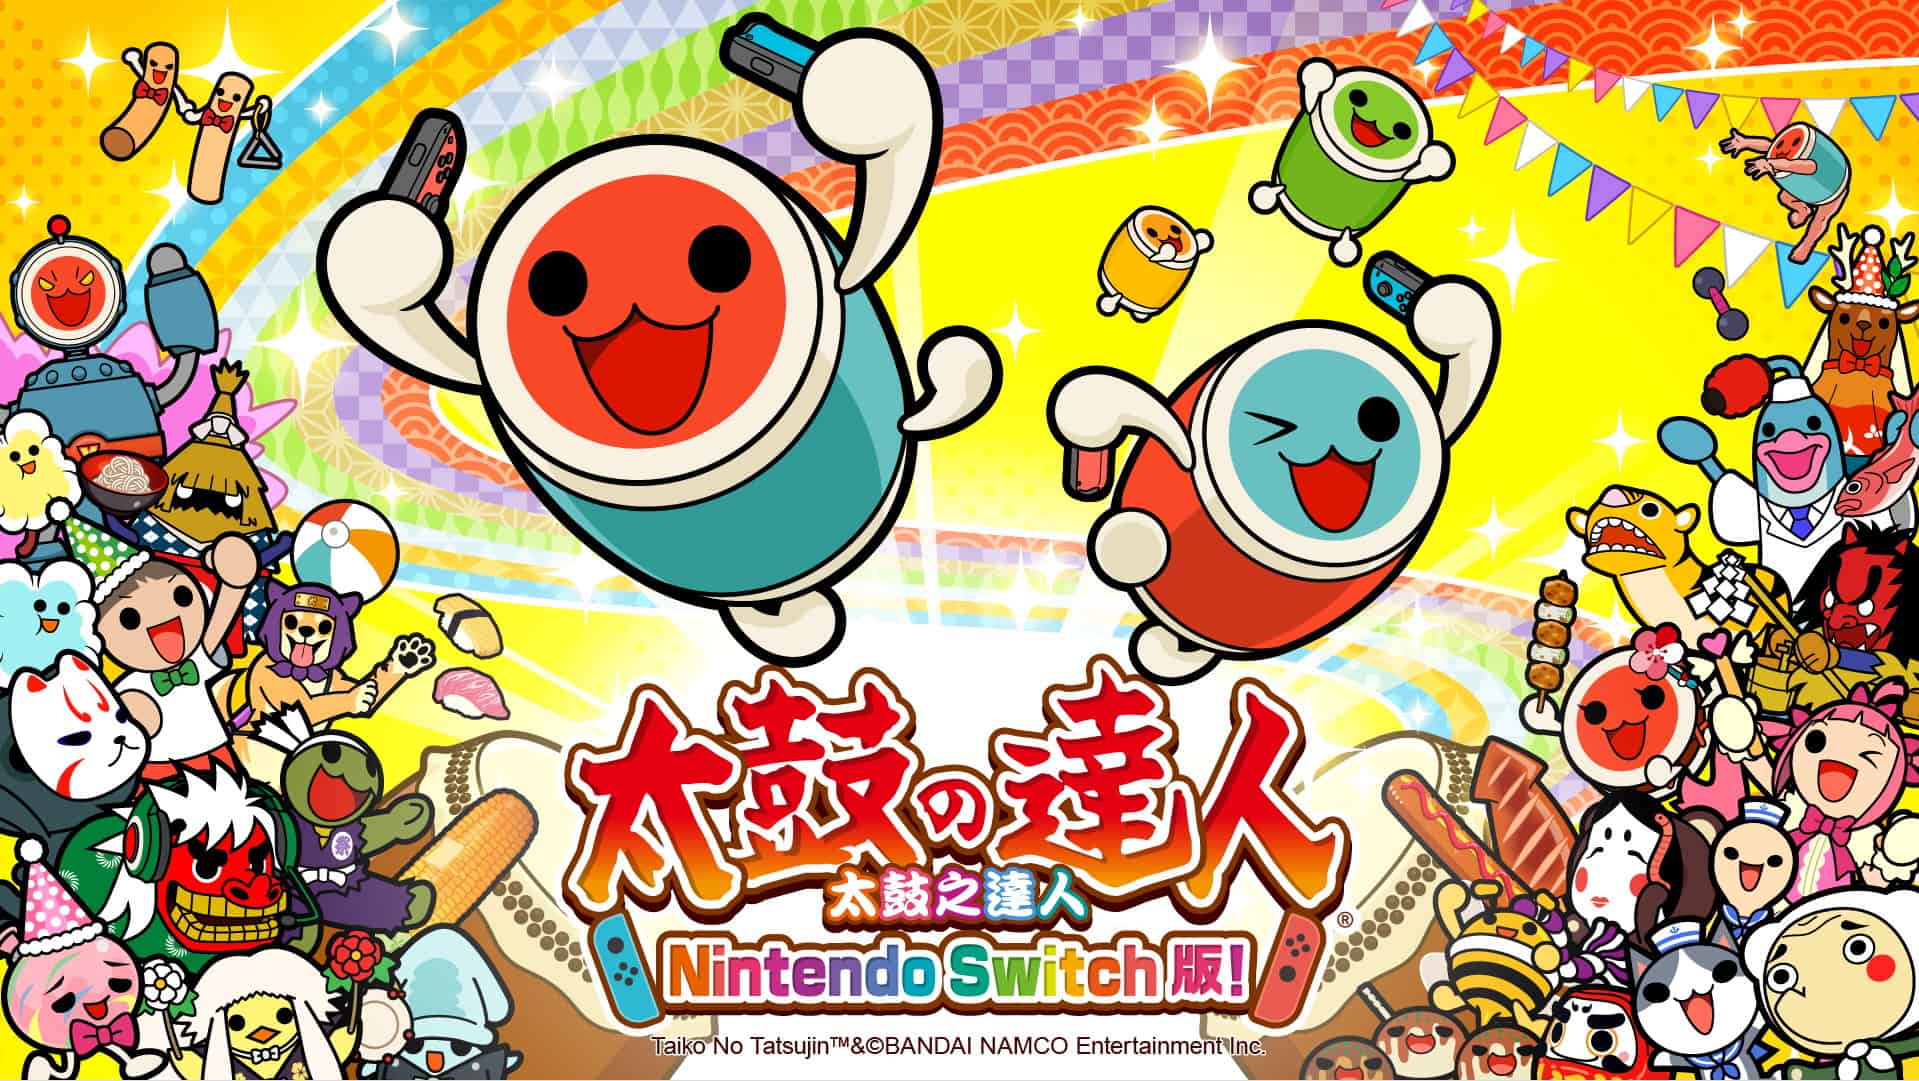 Taiko no Tatsujin Nintendo Switch Version 1